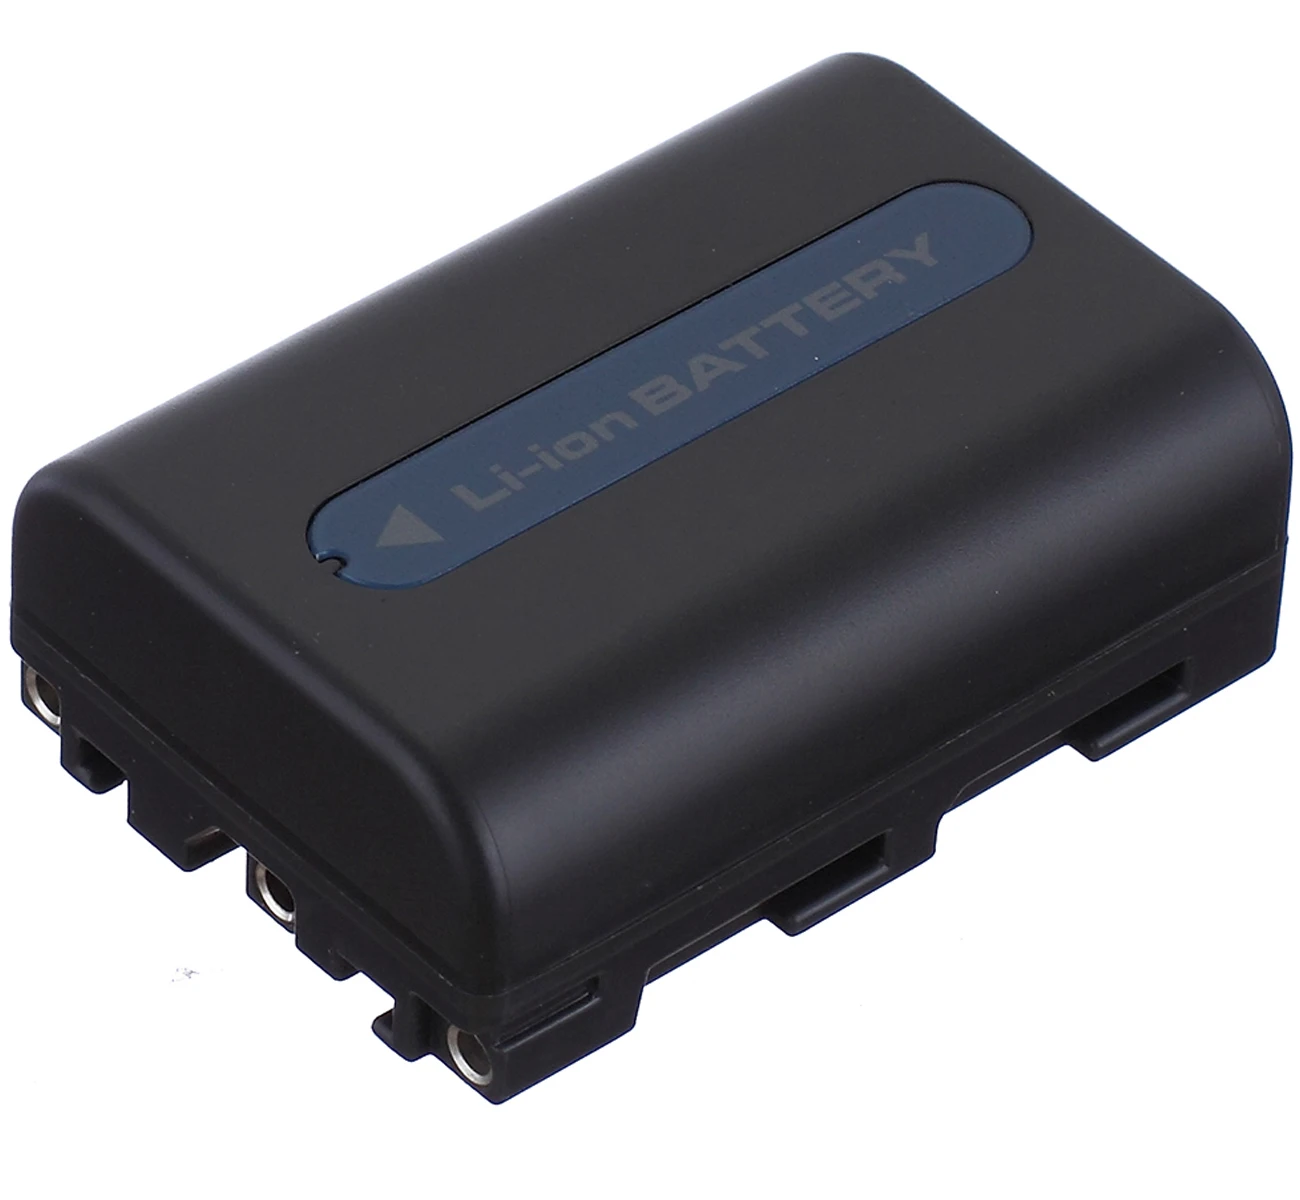 

Battery Pack for Sony DCR-TRV230, DCR-TRV330, DCR-TRV340, DCR-TRV350, DCR-TRV380, DCR-TRV480 Handycam Camcorder